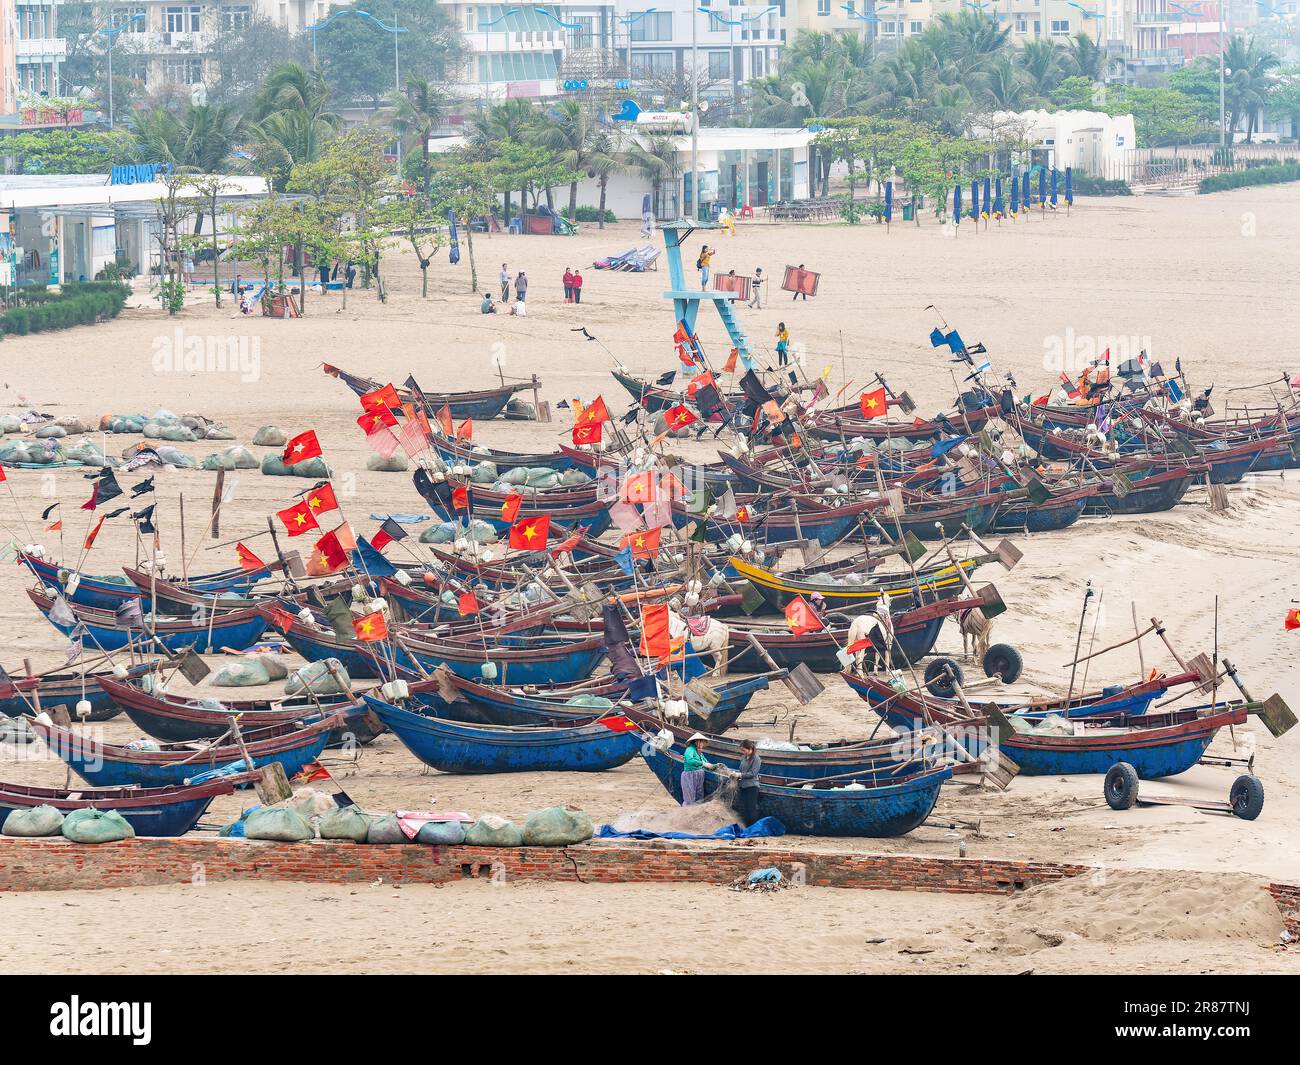 Des bateaux de pêche vietnamiens traditionnels ont été pêchés par une journée hache à Sam son Beach, dans la province de Thanh Hoa au Vietnam. Banque D'Images